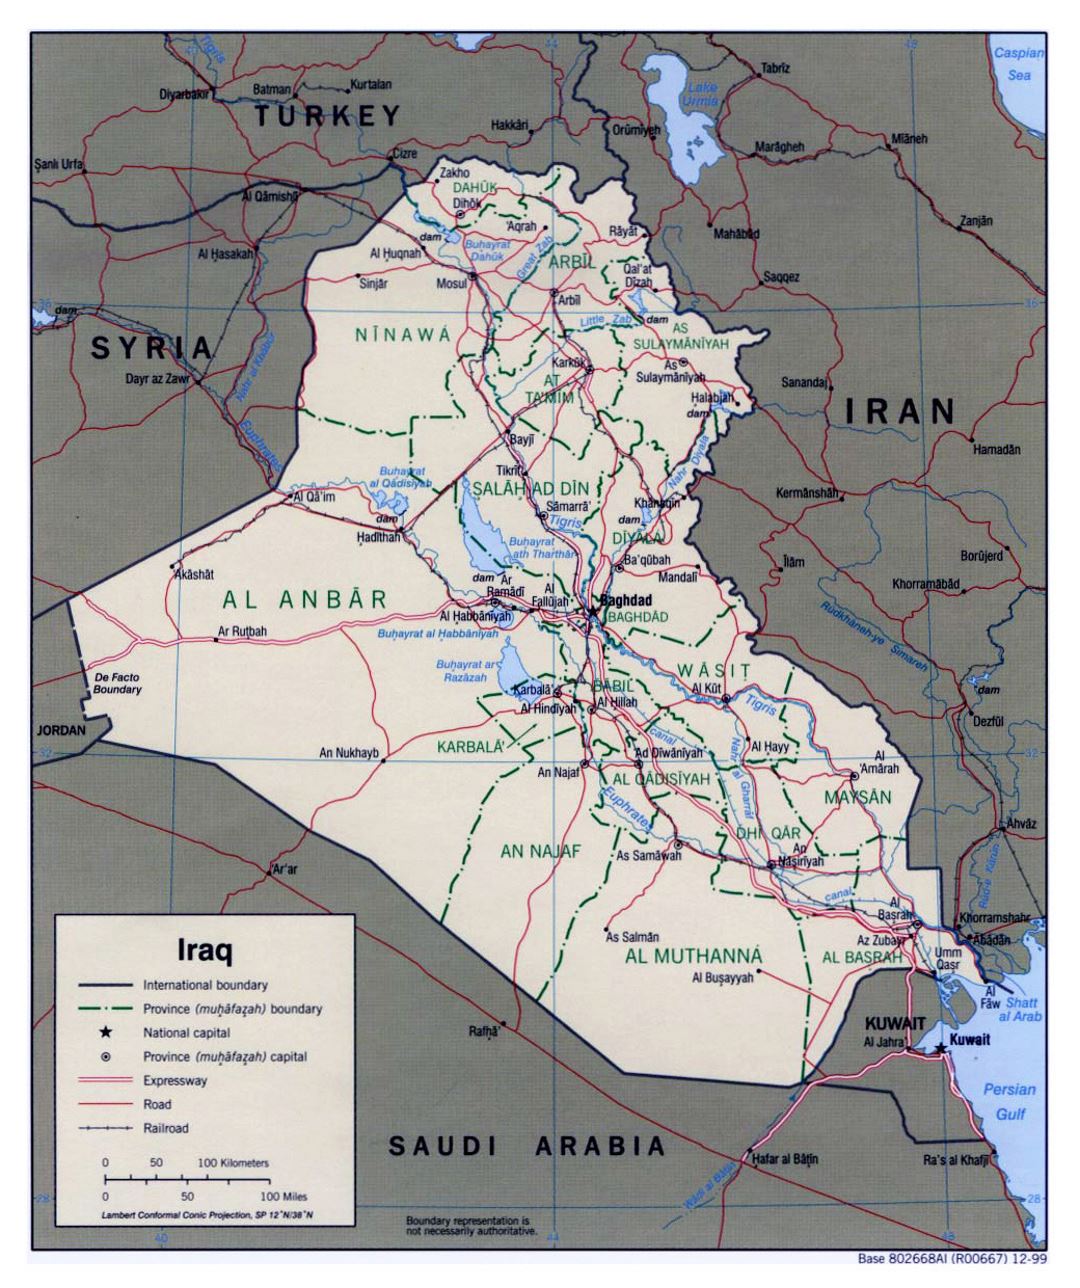 Grande mapa político y administrativo de Iraq con carreteras, ferrocarriles y principales ciudades - 1999